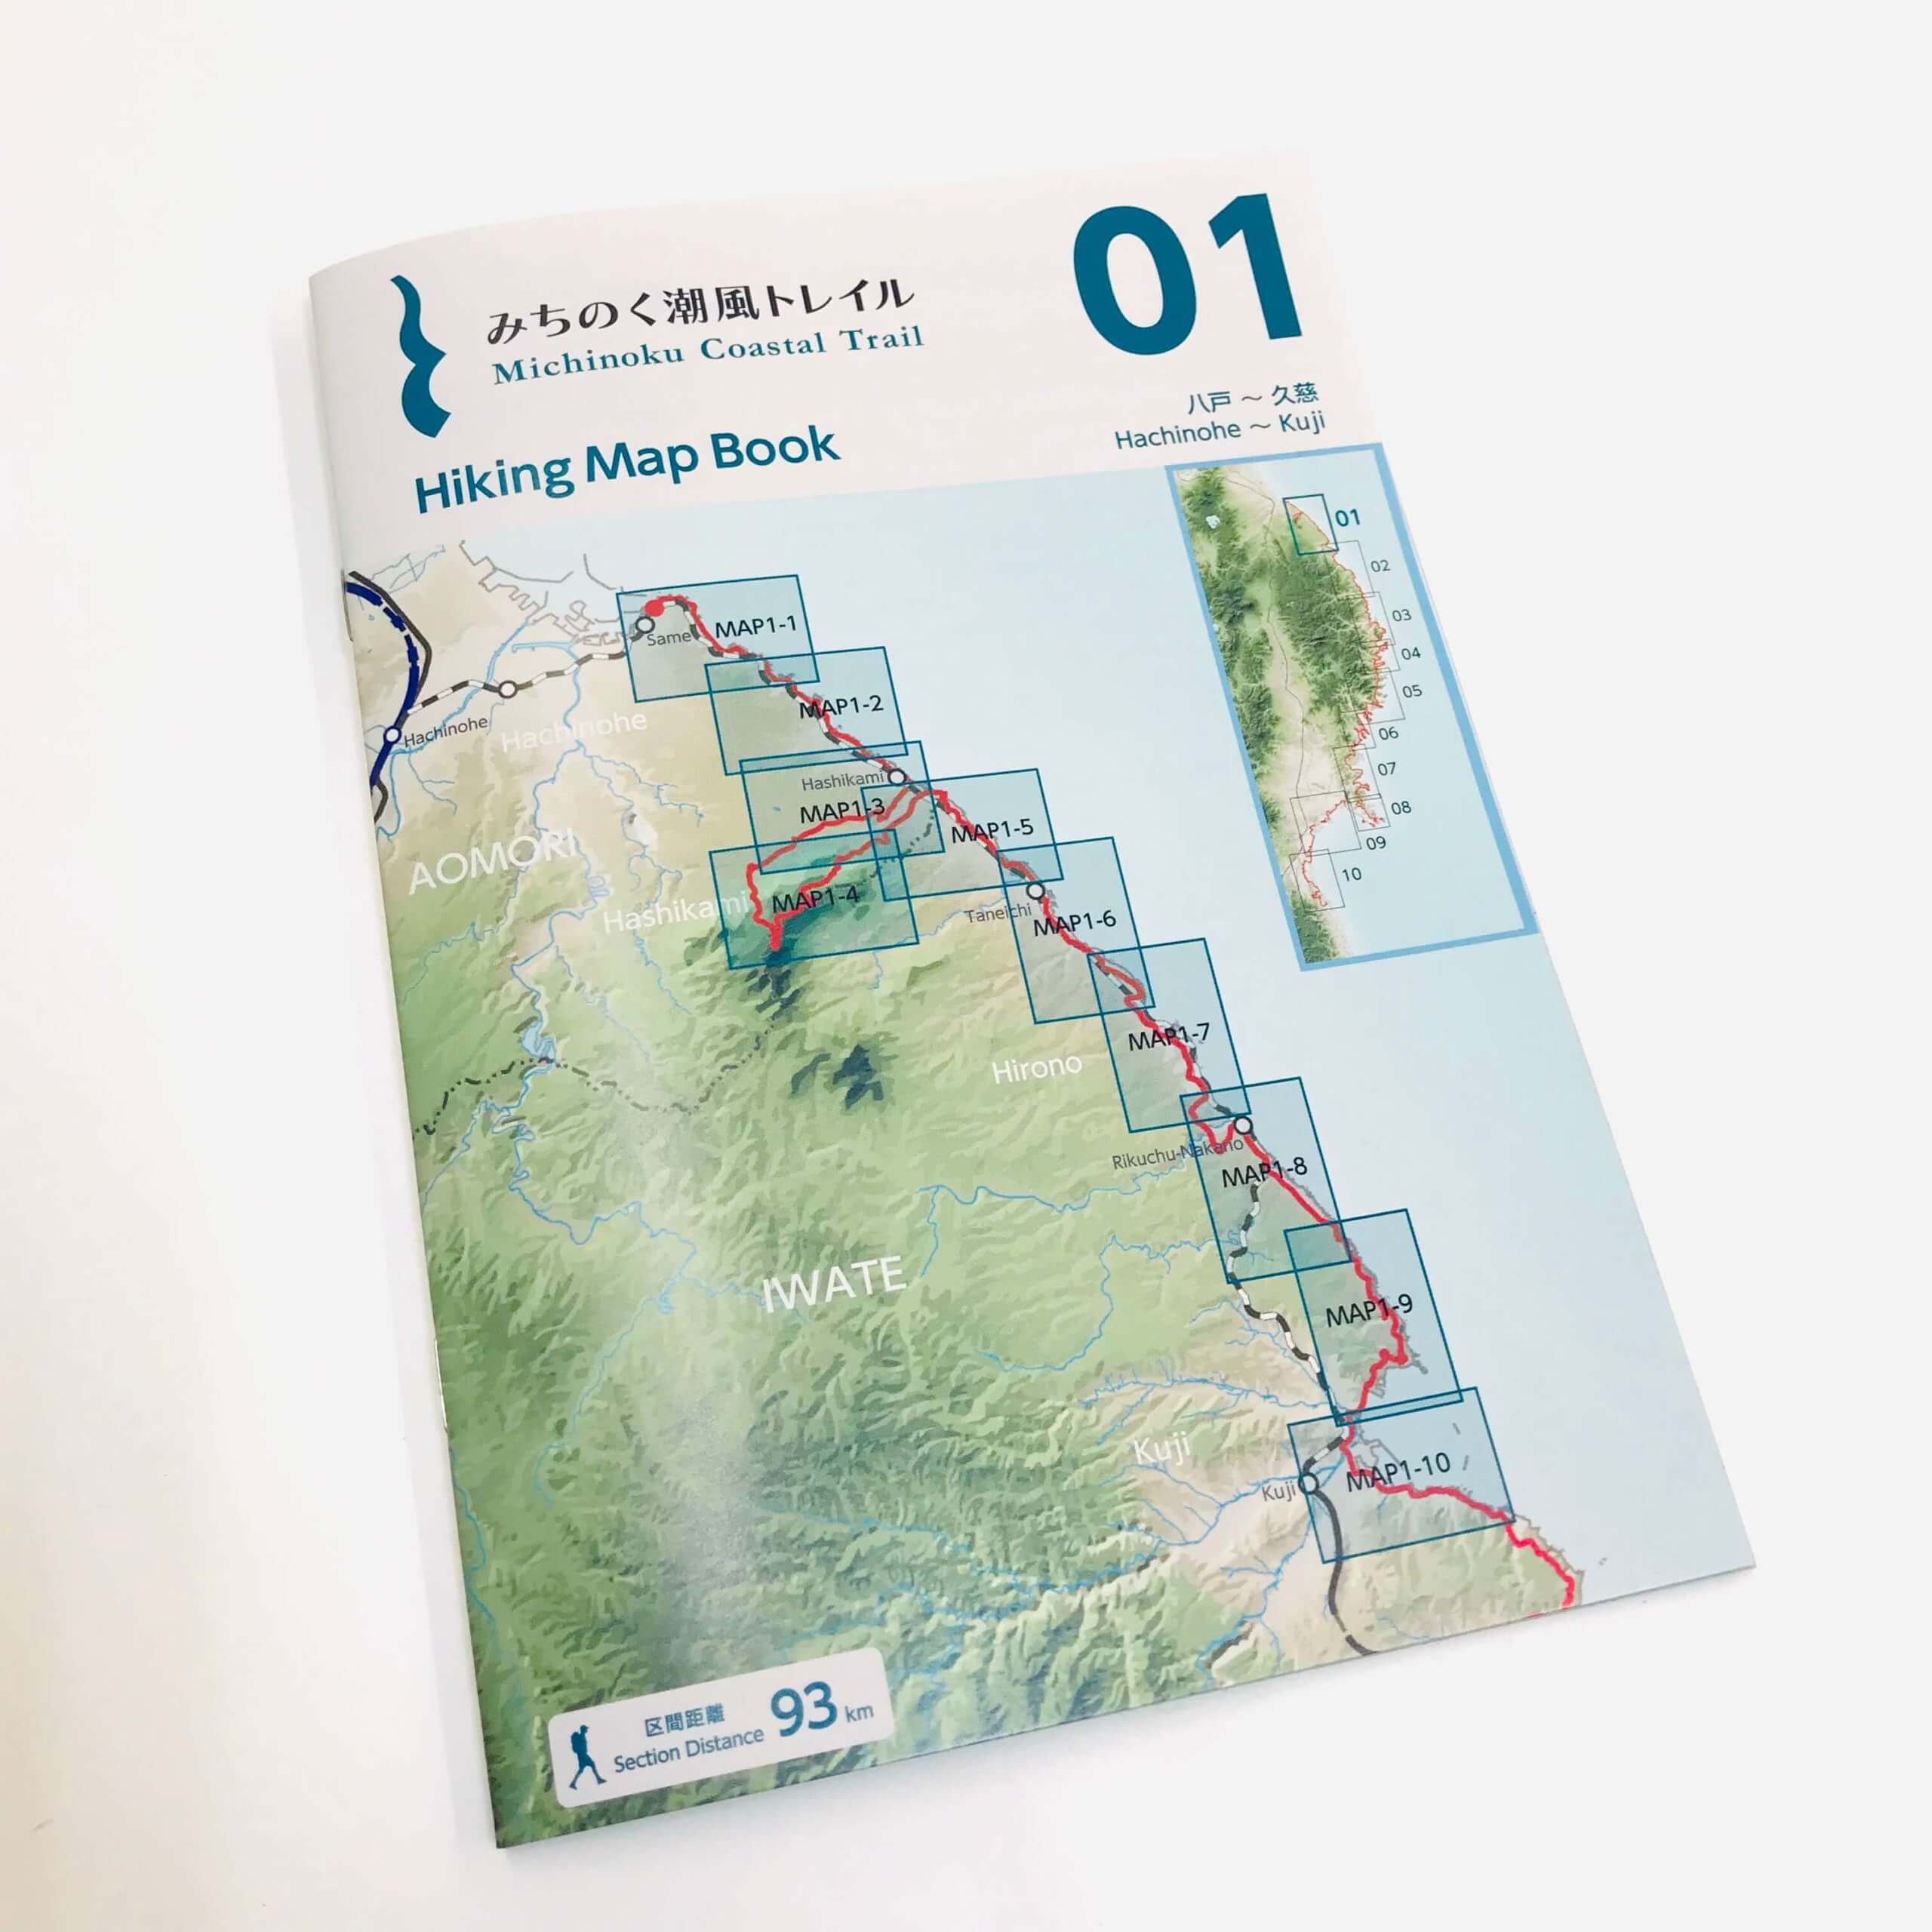 みちのく潮風トレイル Hiking Map Book